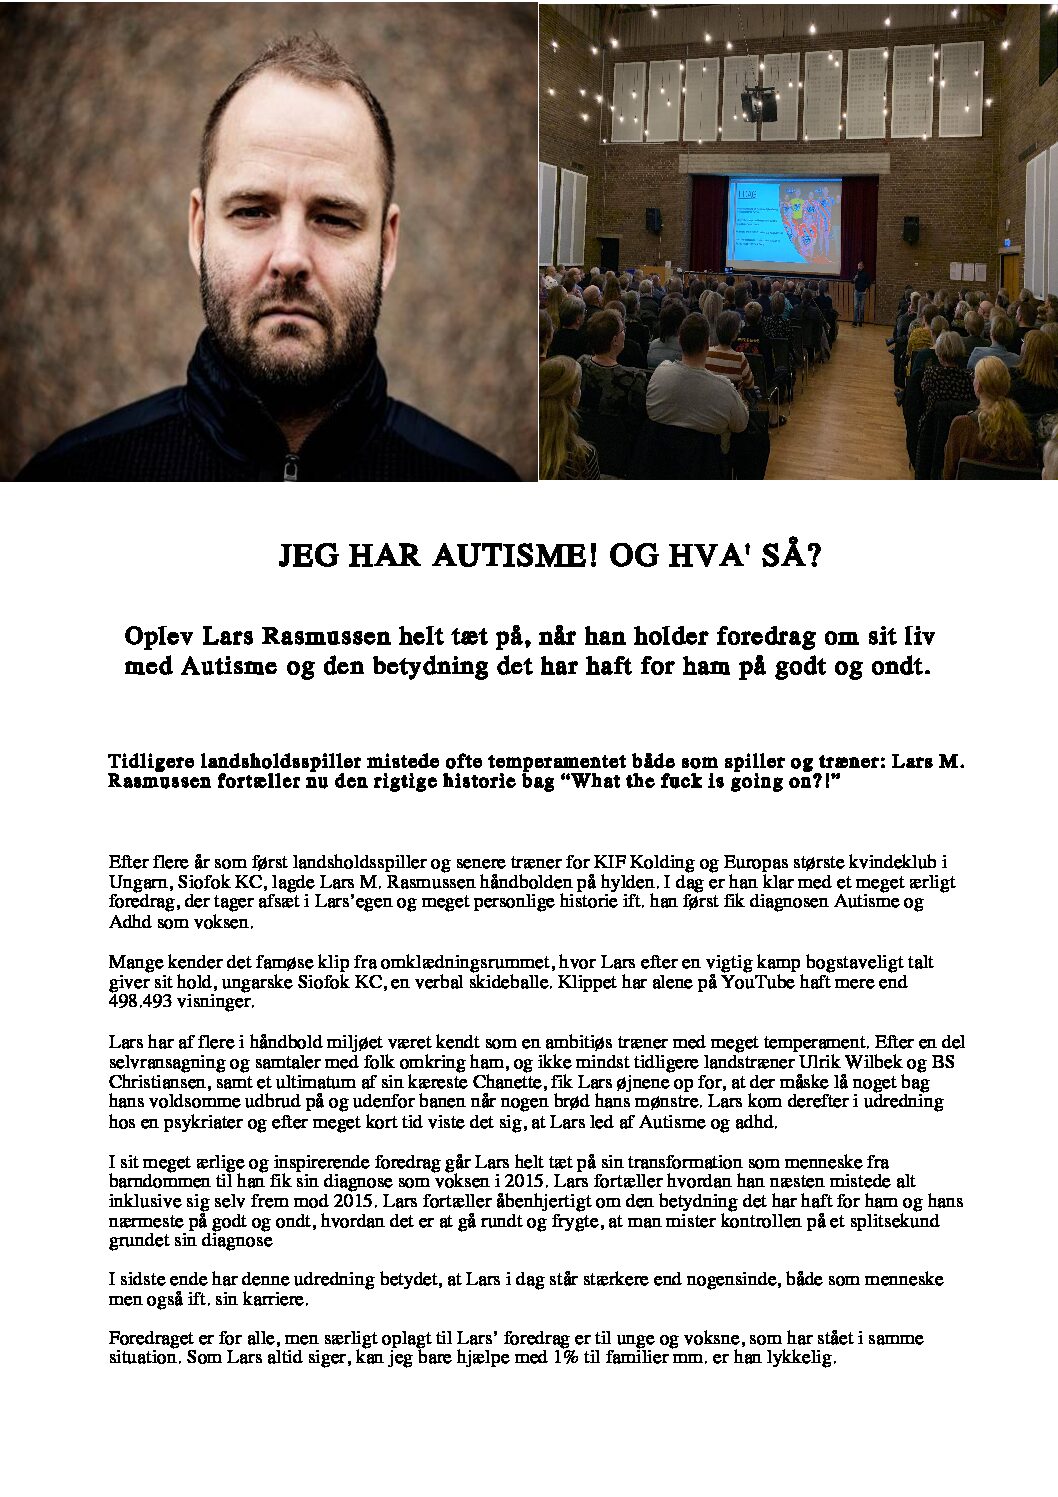 Foredrag: Lars Rasmussen - Diagnose som voksen / mit liv med autisme